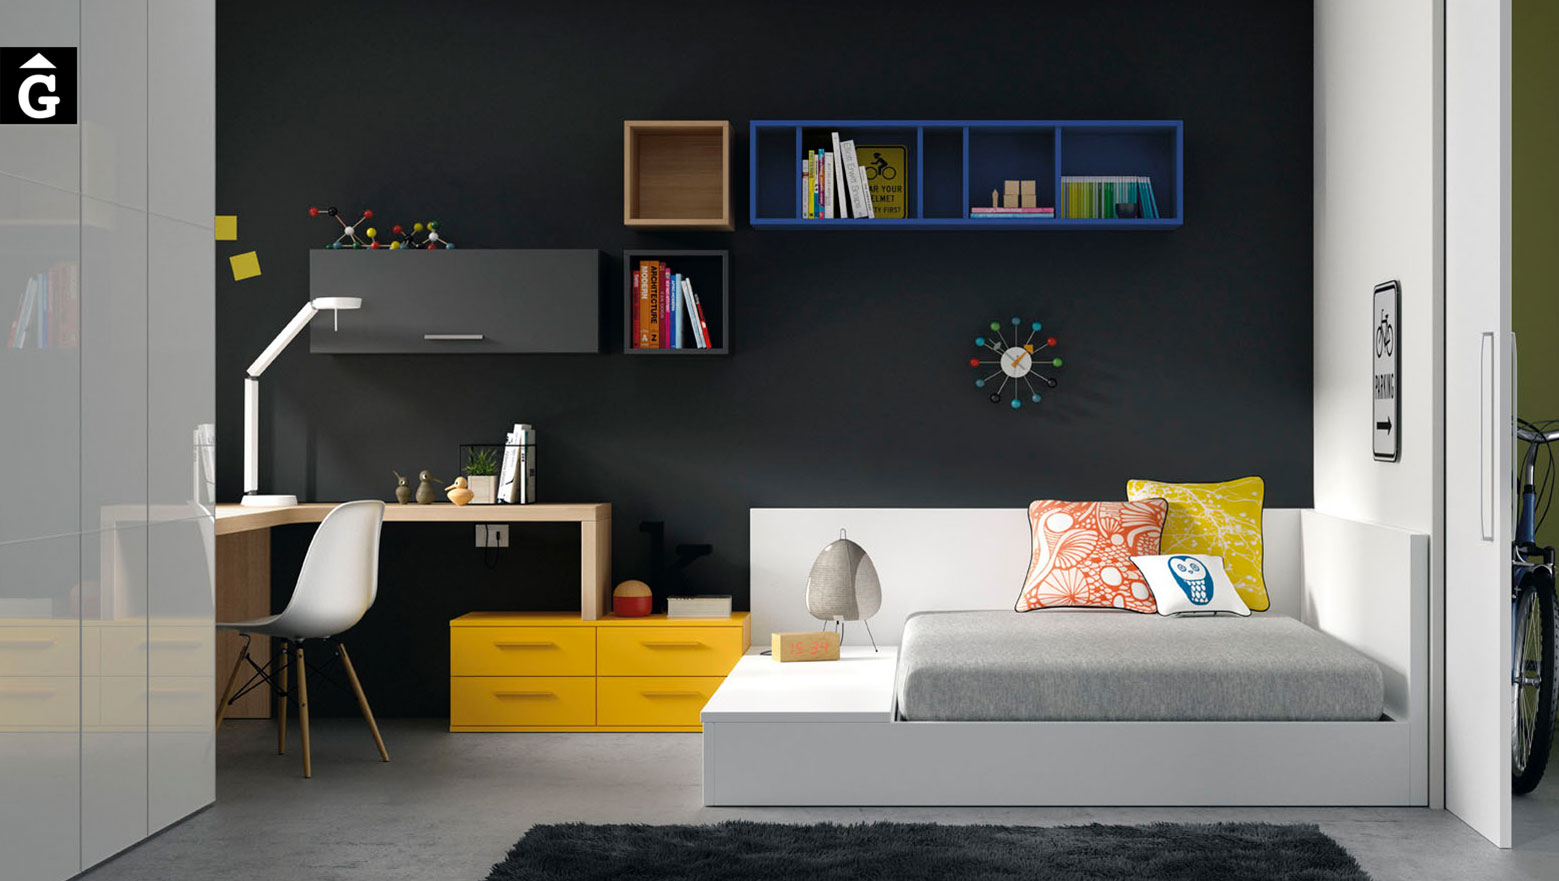 38-mobles-Gifreu-&-muebles-JJP-habitació-juvenil-llit-tatami-modern-atractiu-atrevit